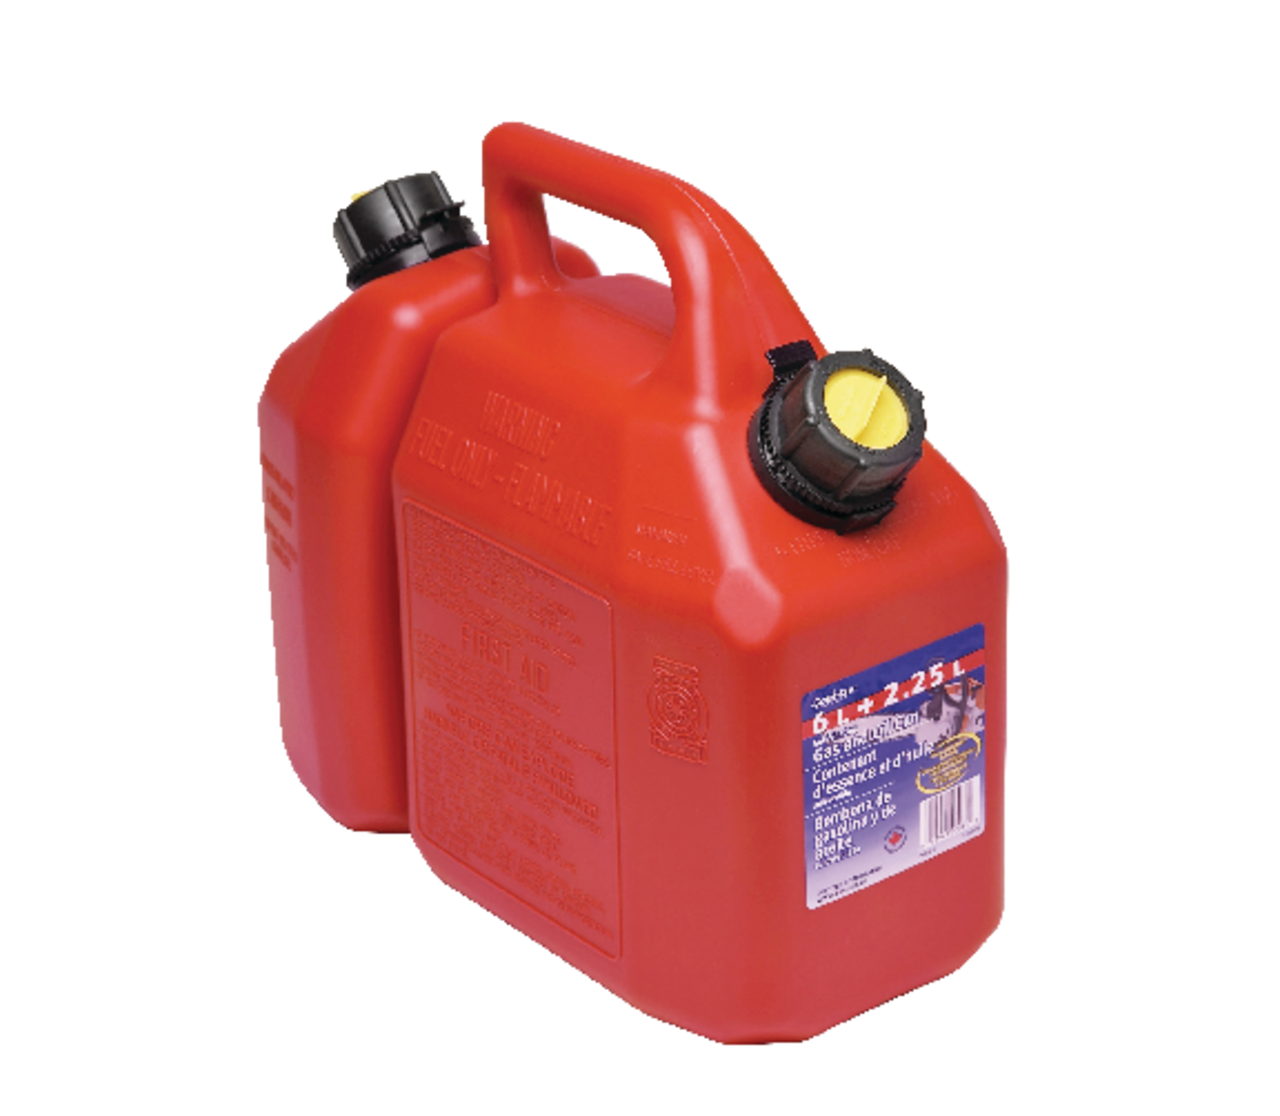 Bidon / réservoir d'essence 20 litres rouge - Pour diesel et essence -  Bidons